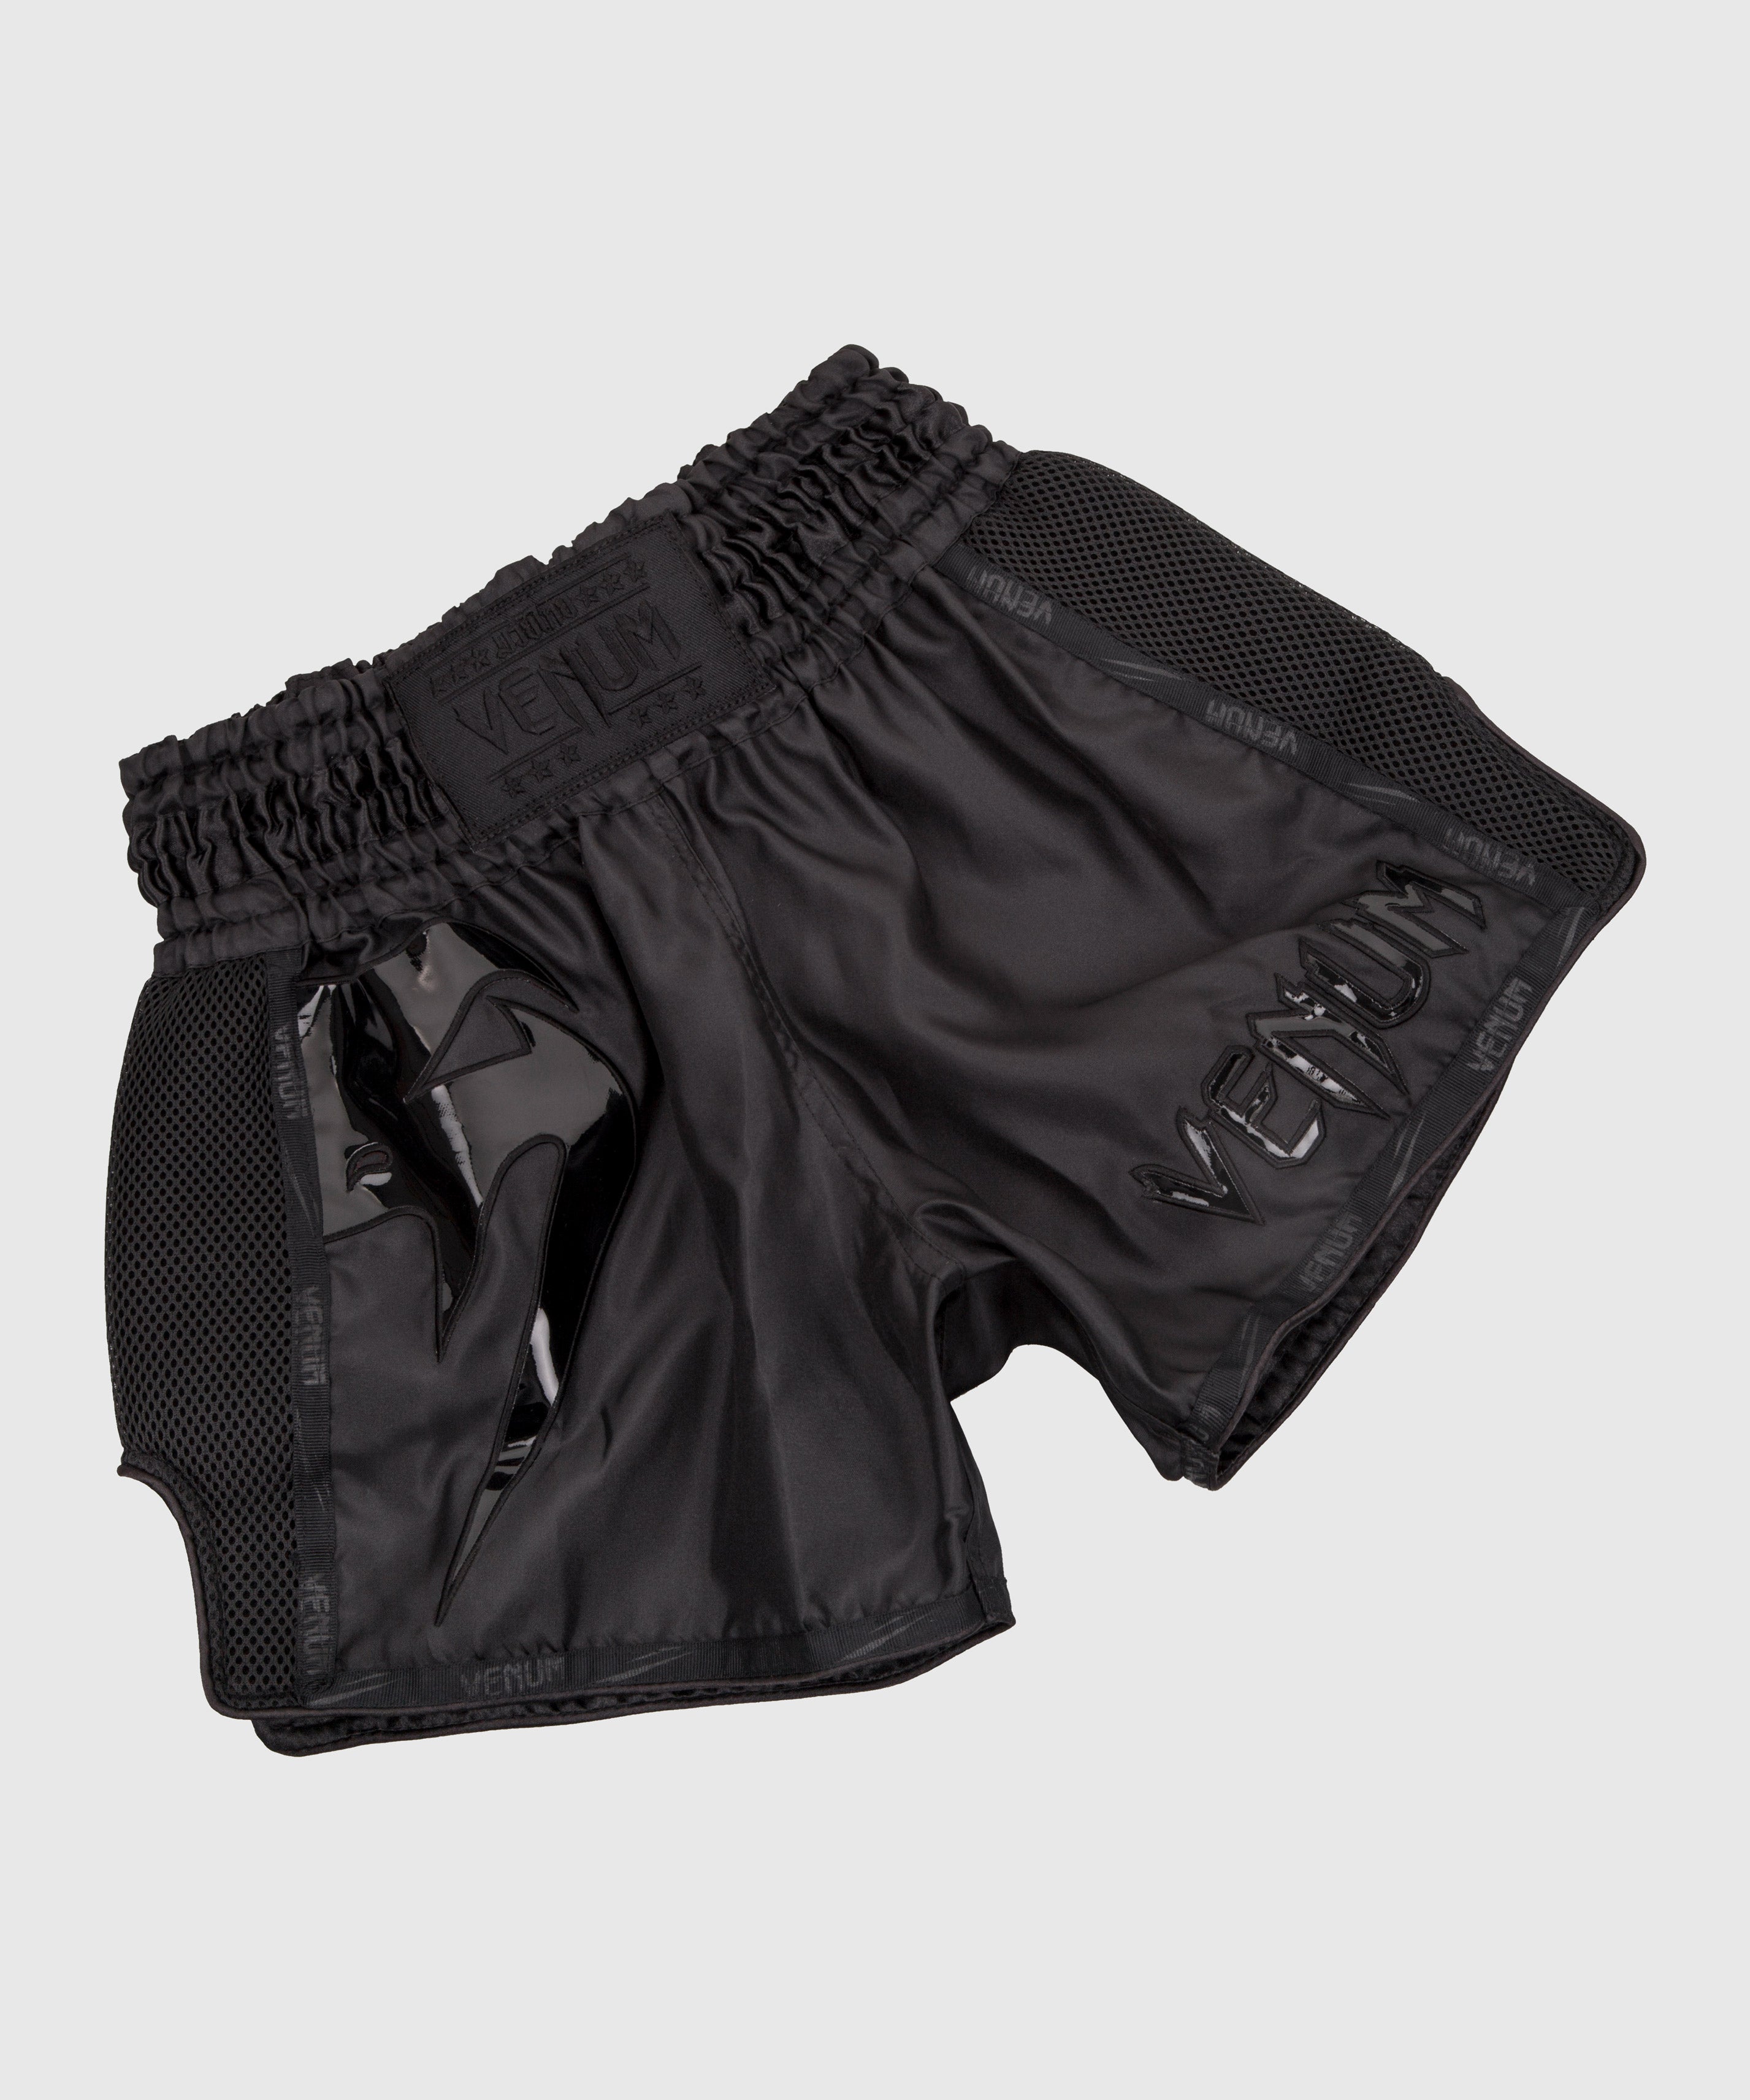 Pantalones de Muay Thai Venum Giant Camo - Negro/Amarillo – Venum España